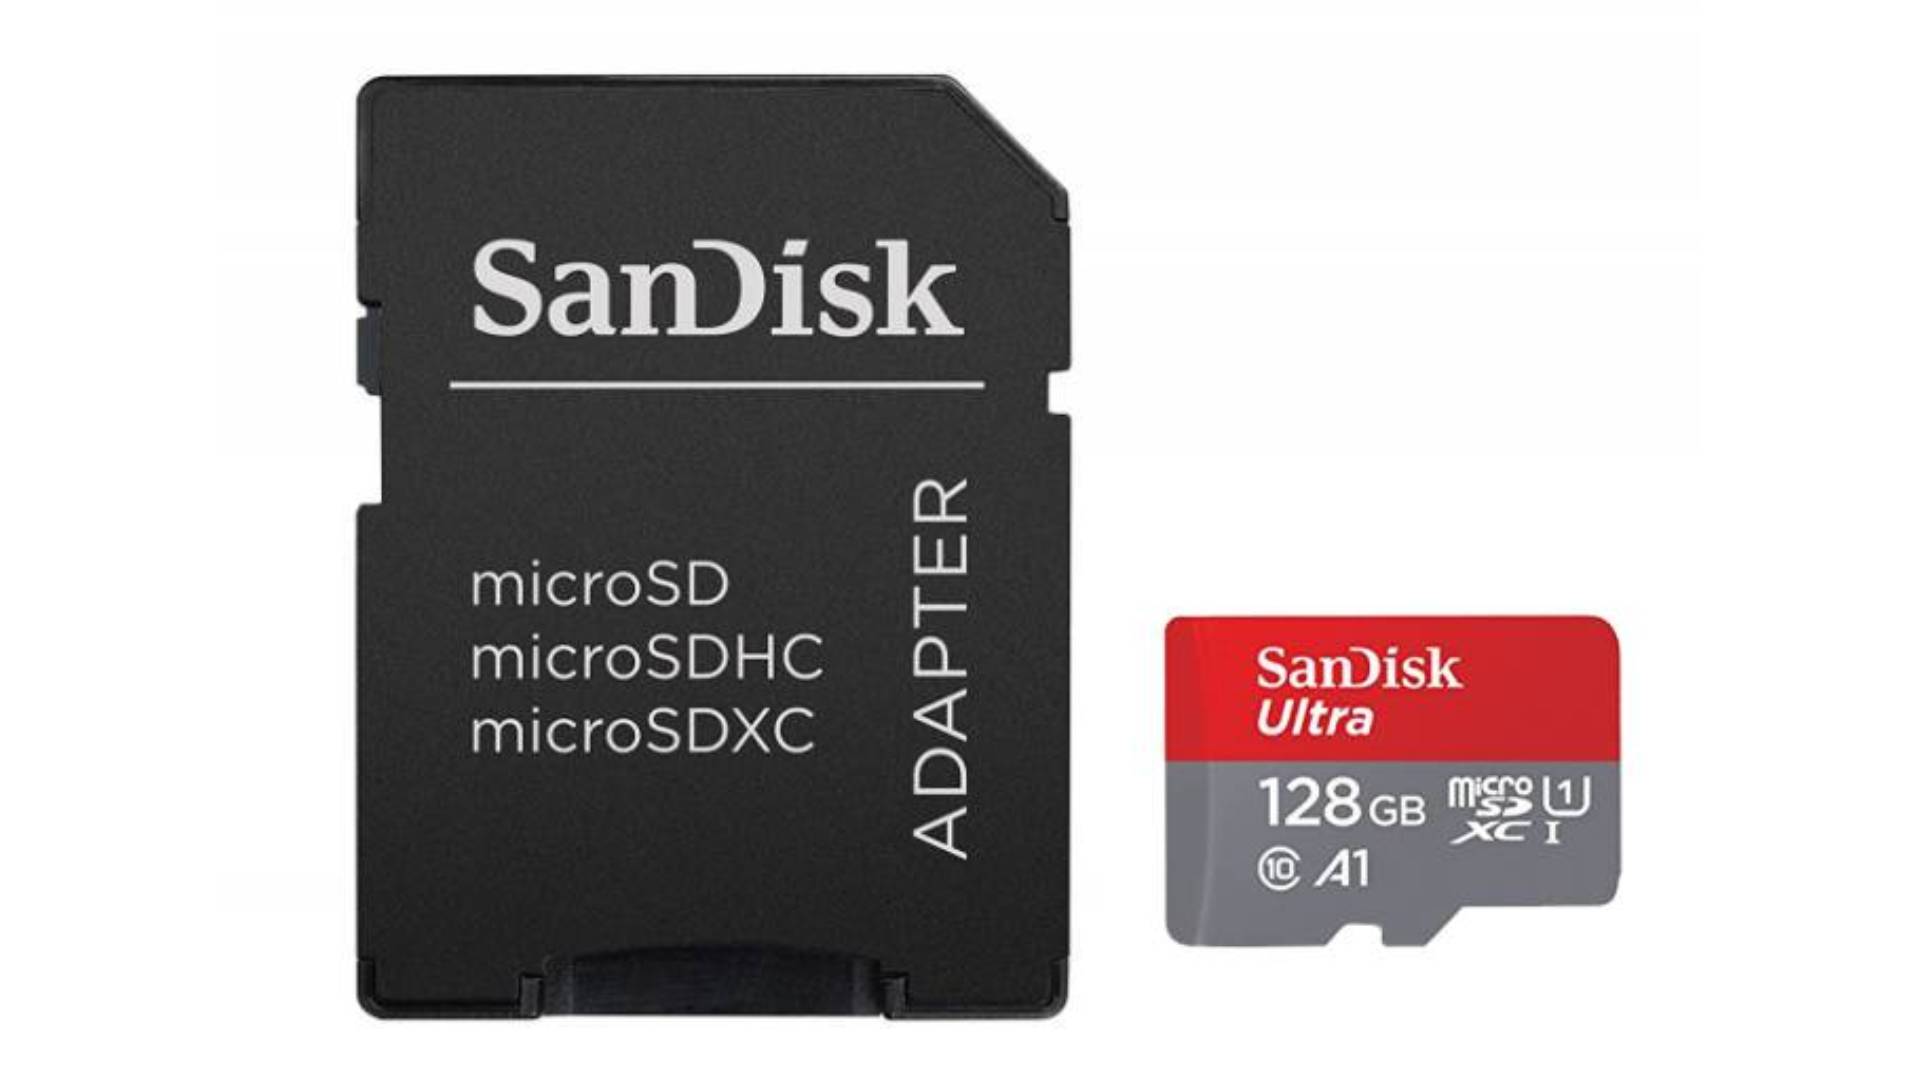 خرید کارت میکرو SD سان دیسک 128 گیگابایت